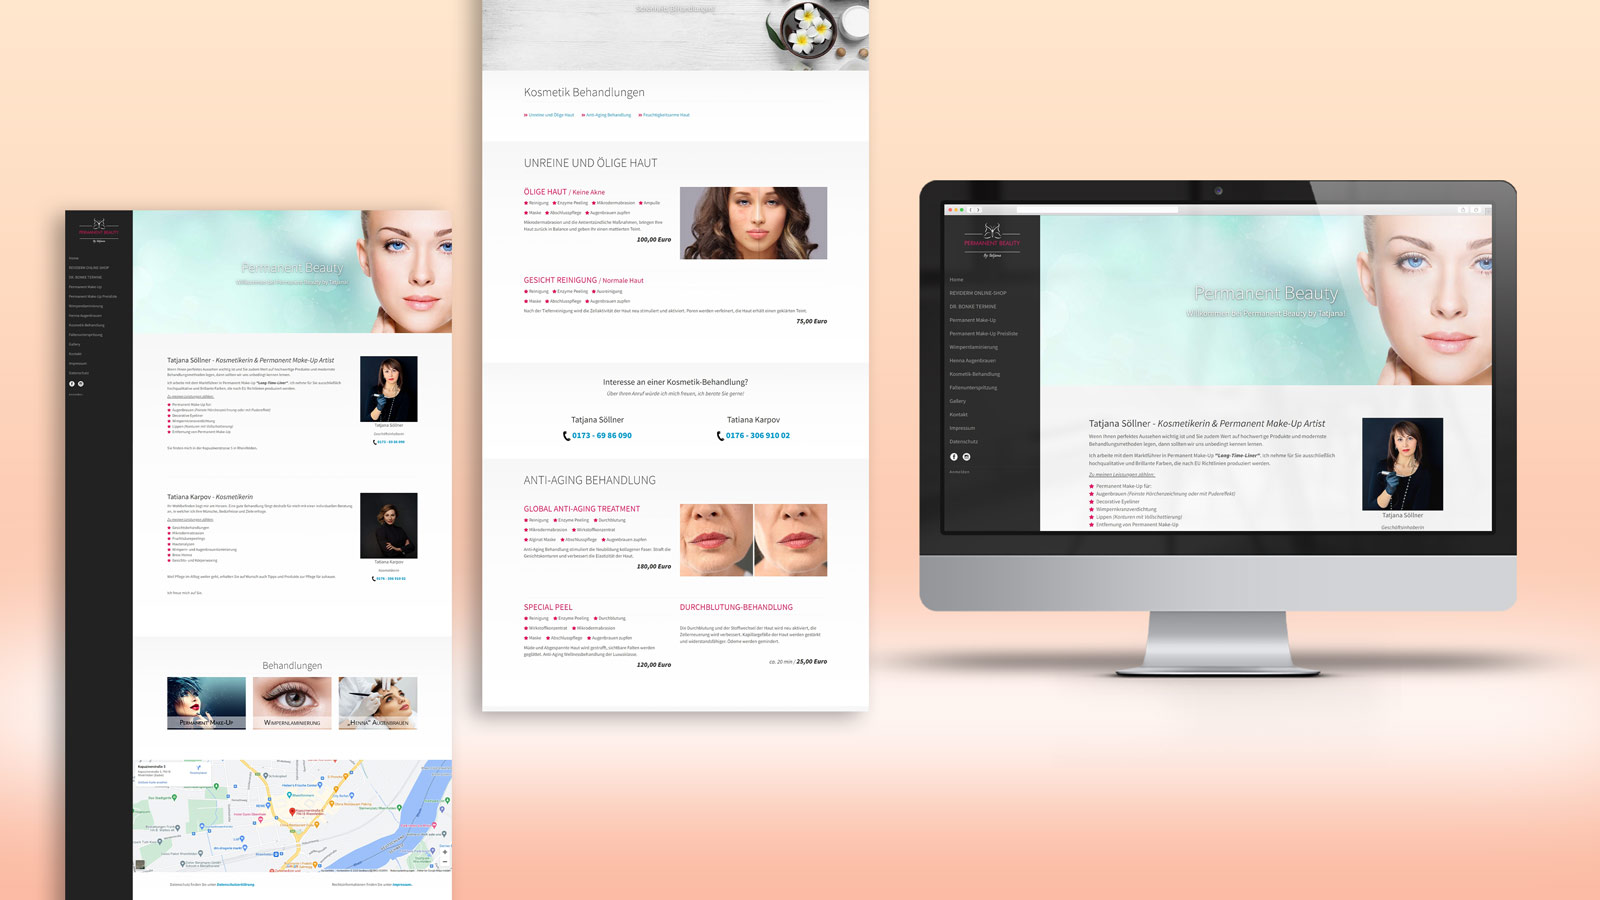 Permanent Beauty - Responsive Website